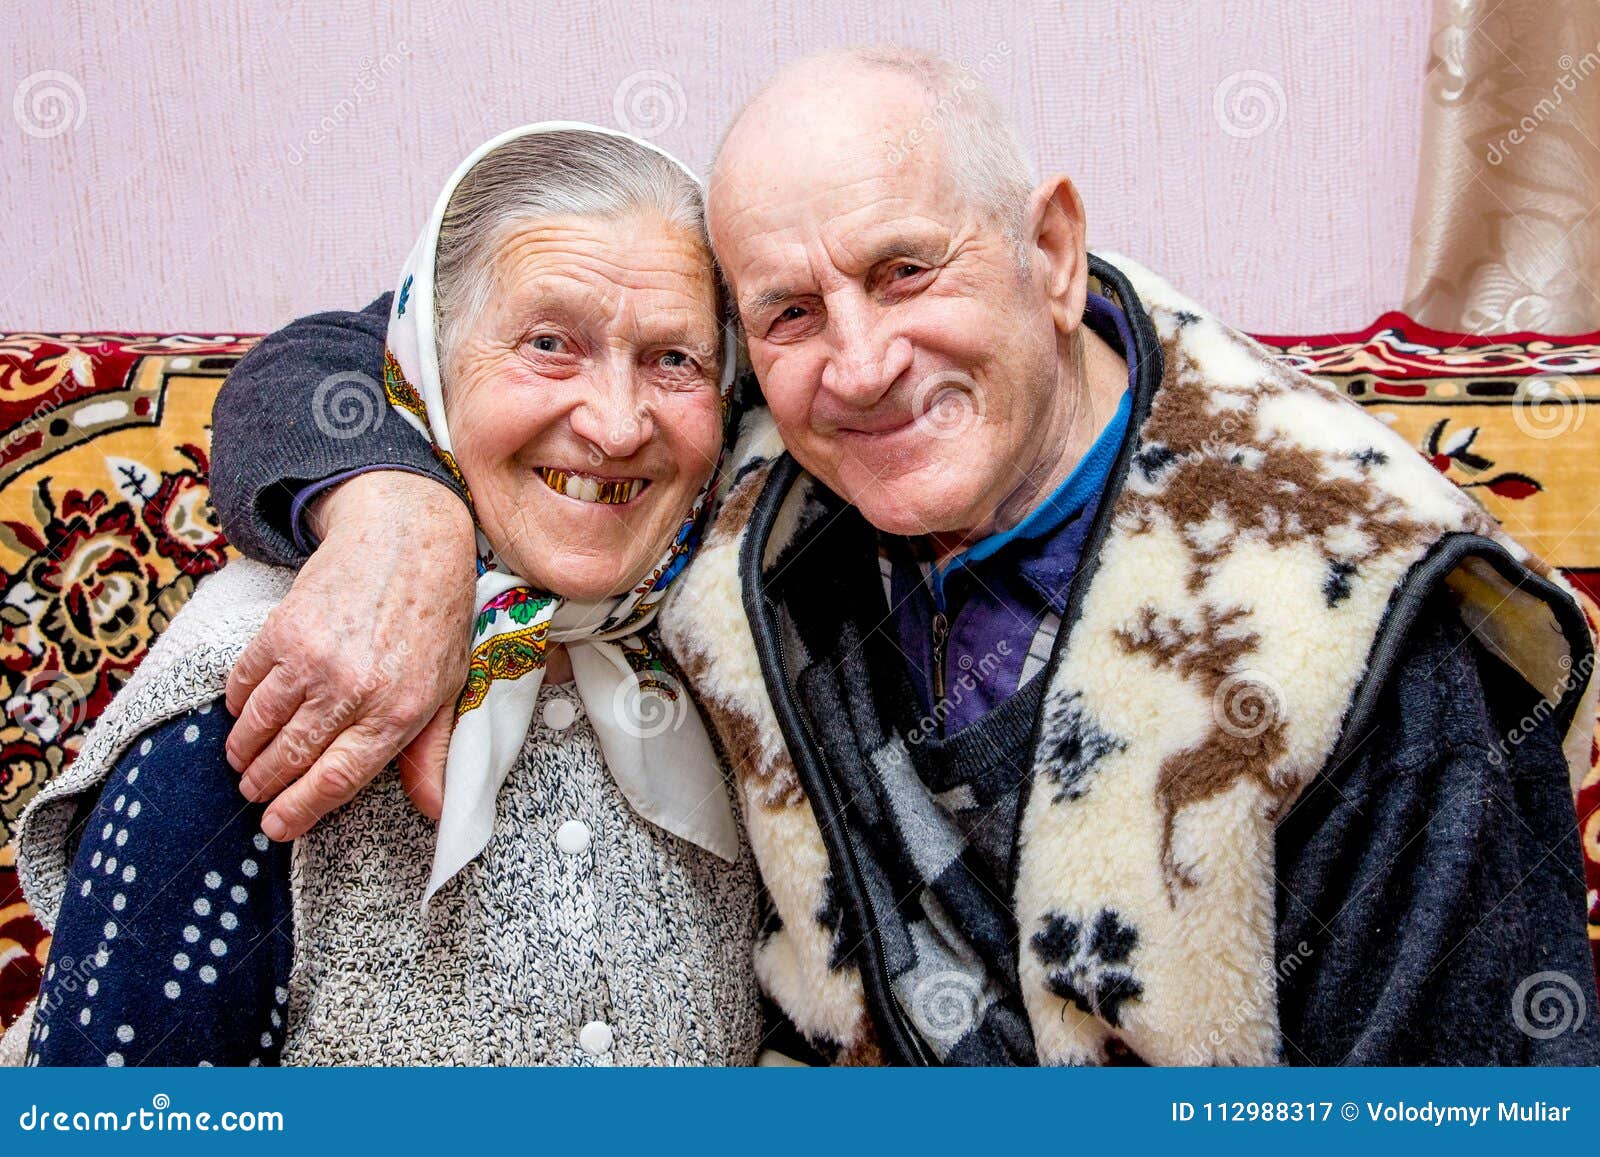 Толстый дед бабушки. Дед обнимает бабку. Бабушка и дедушка обнимаются. Бабушка с дедушкой в обнимку. Дедушка обнимает бабушку.